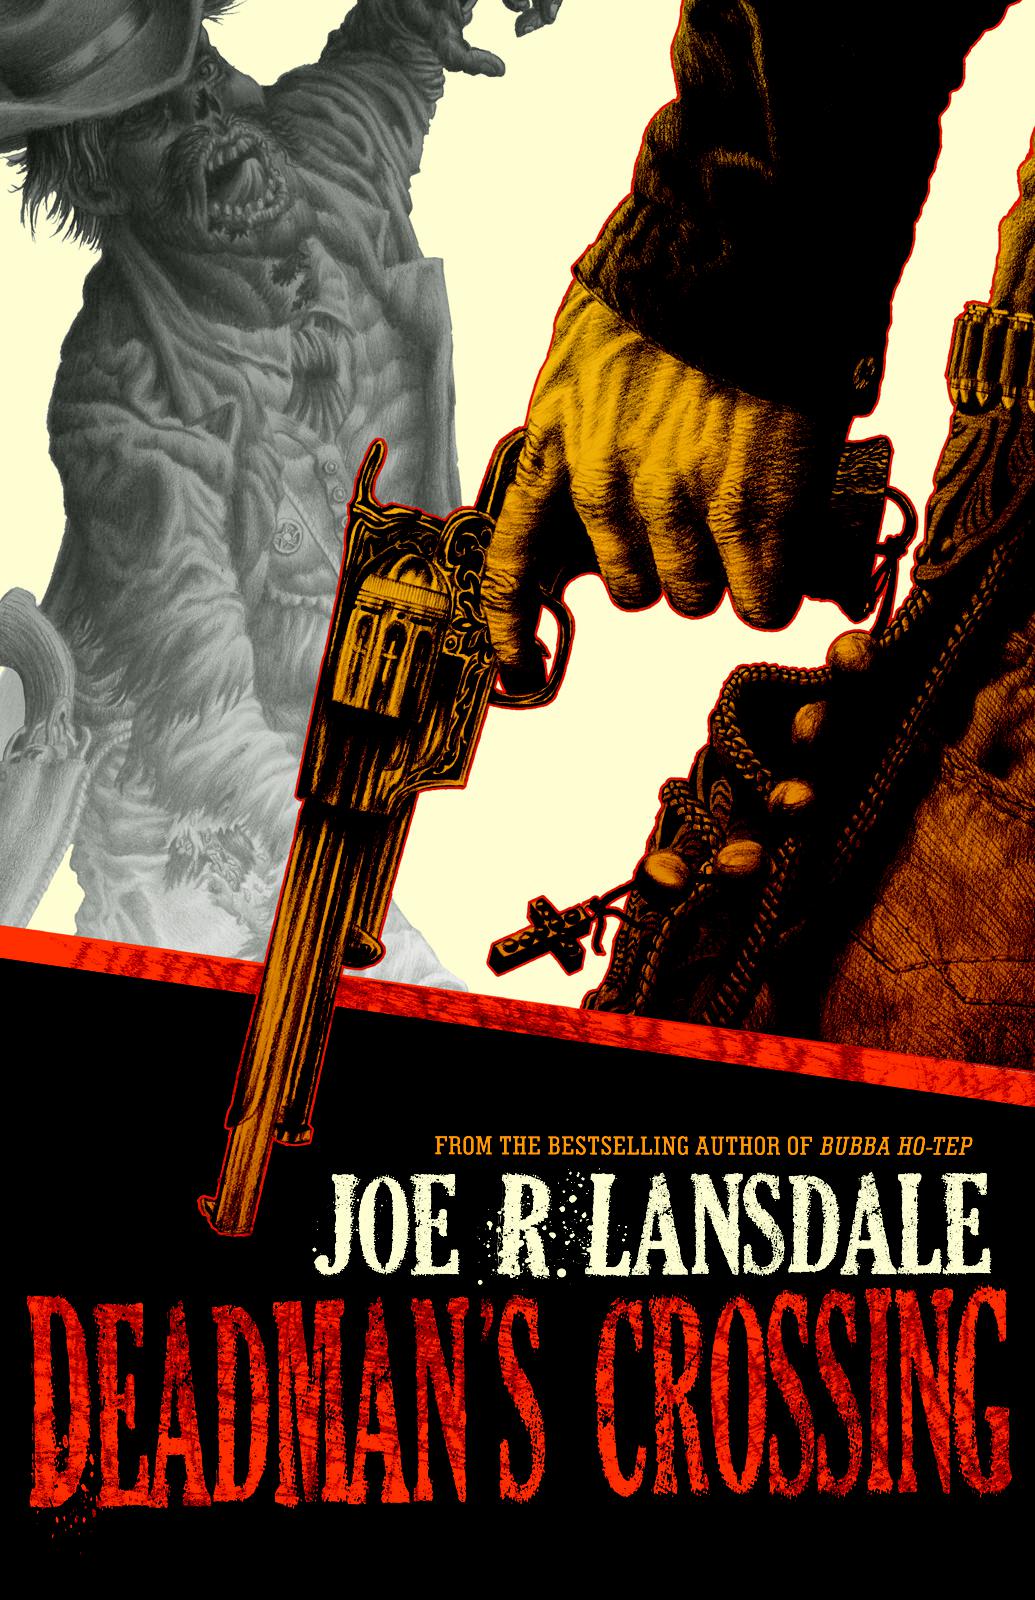 Deadman's Crossing by Joe R. Lansdale